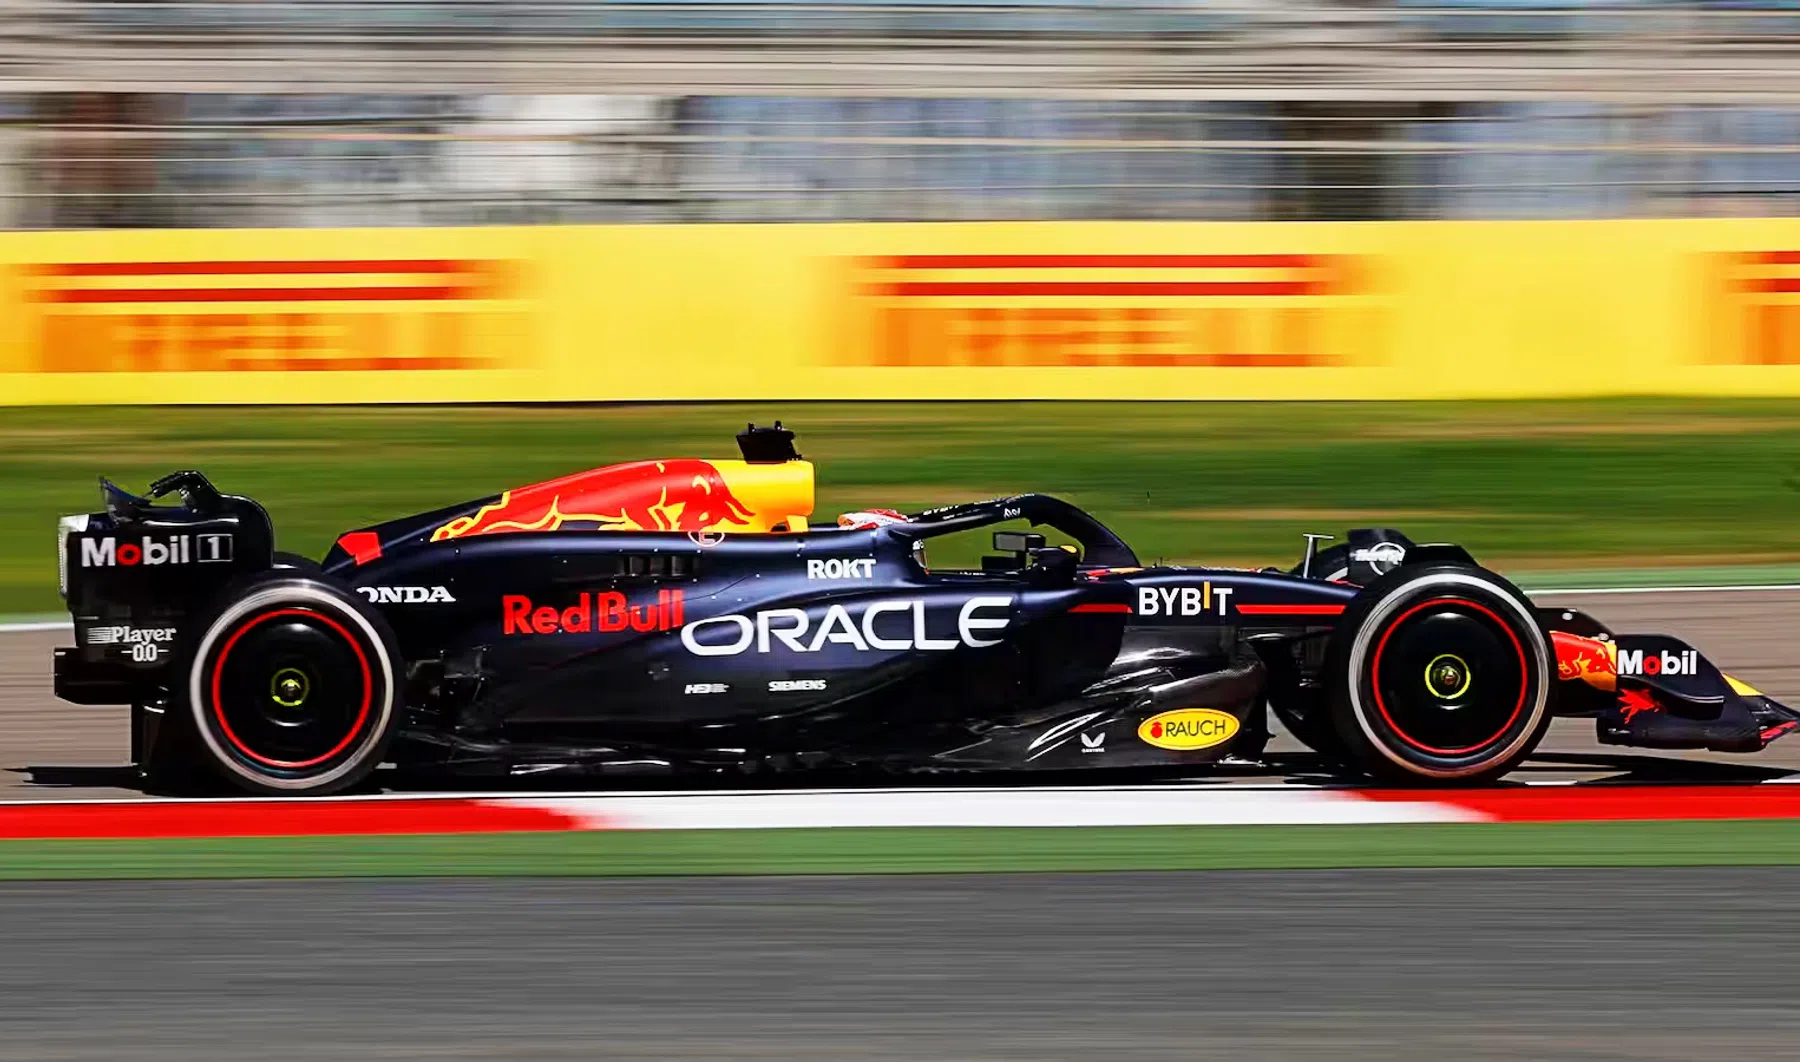 Formule 1 binnenkort in 4K bij Viaplay? 'Betere beeldkwaliteit heeft prioriteit'